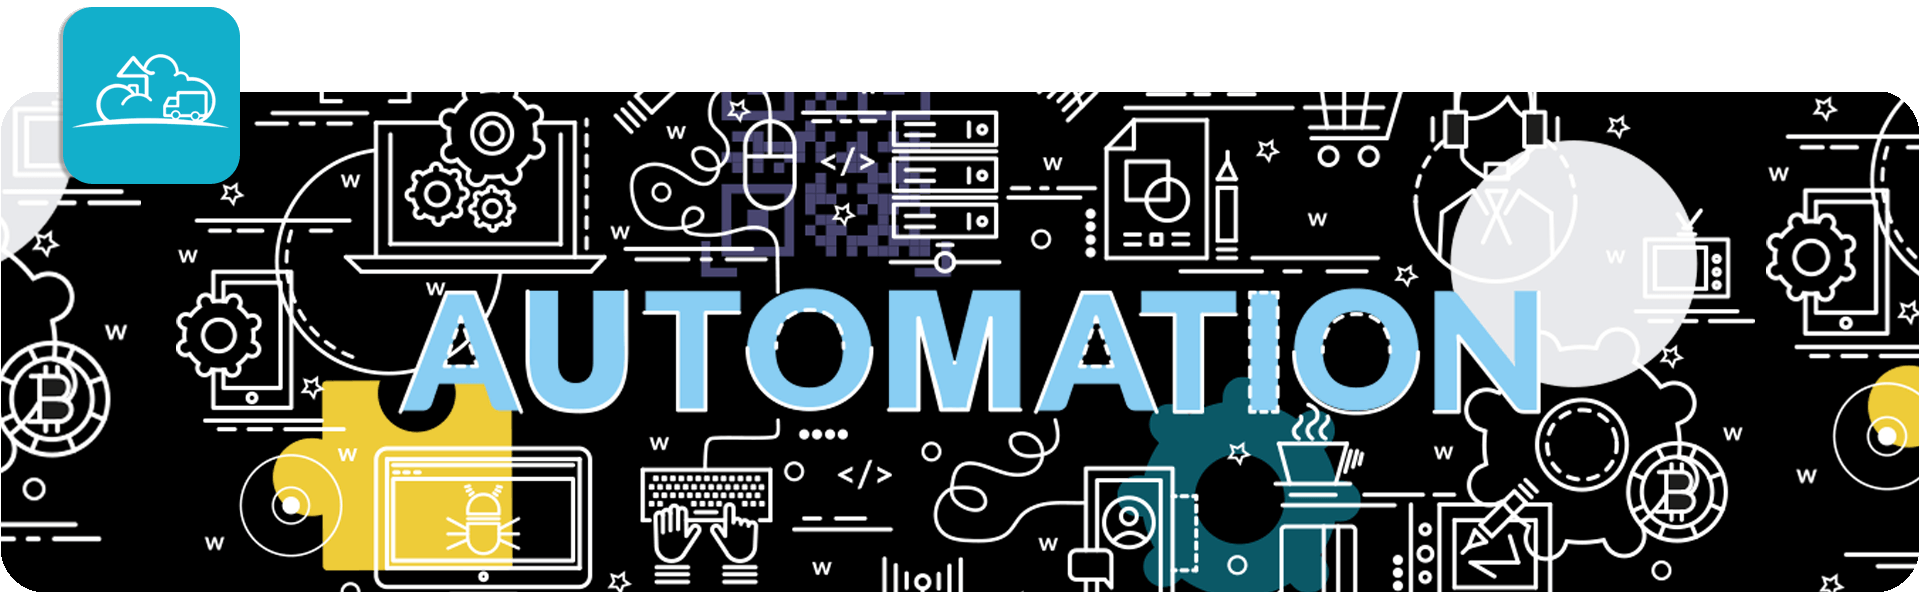 automation illustration